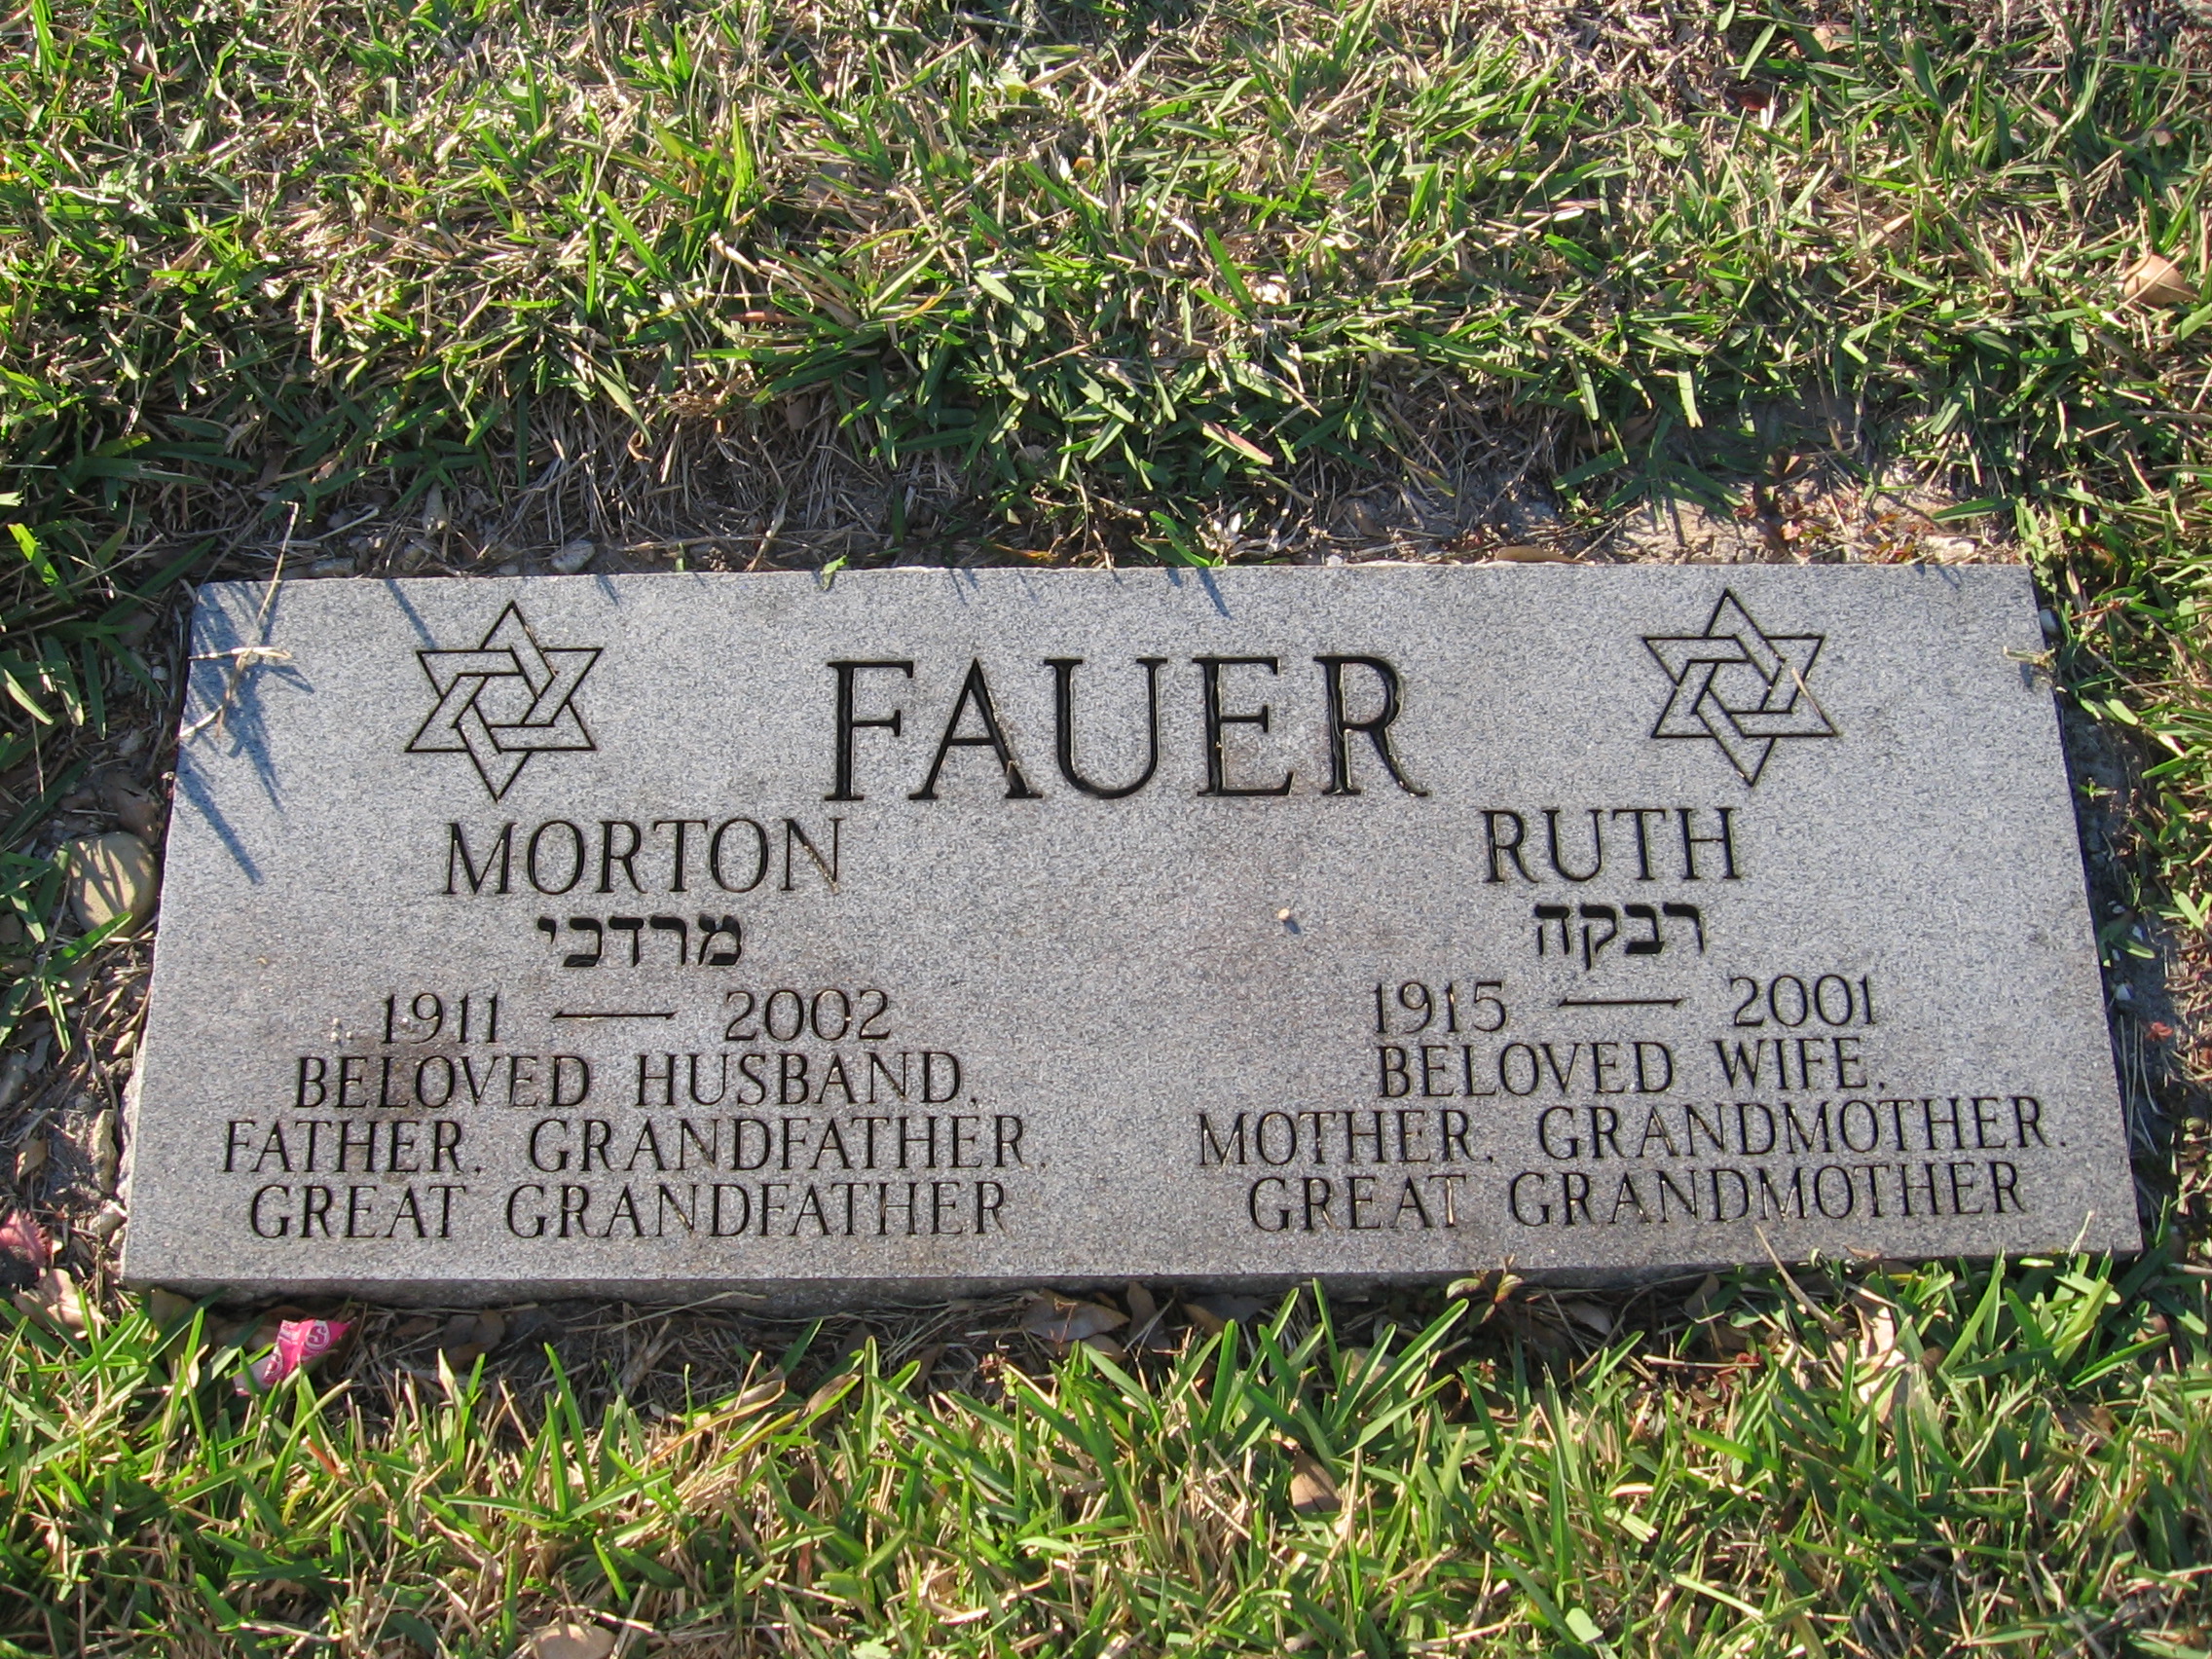 Ruth Fauer